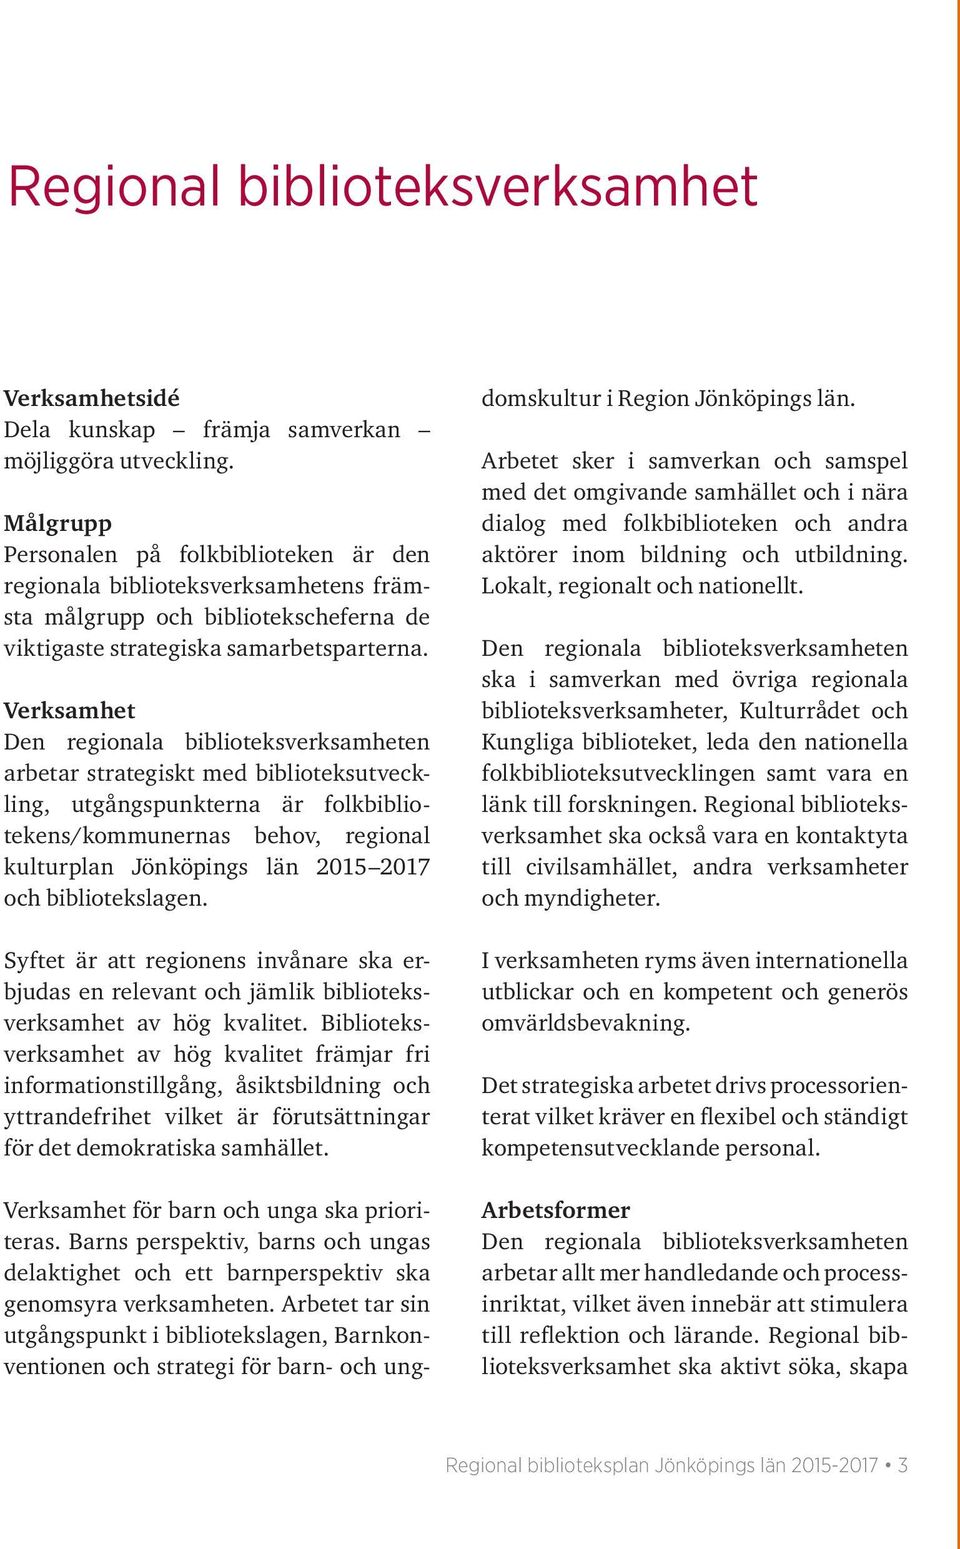 Verksamhet arbetar strategiskt med biblioteksutveckling, utgångspunkterna är folkbibliotekens/kommunernas behov, regional kulturplan Jönköpings län 2015 2017 och bibliotekslagen.